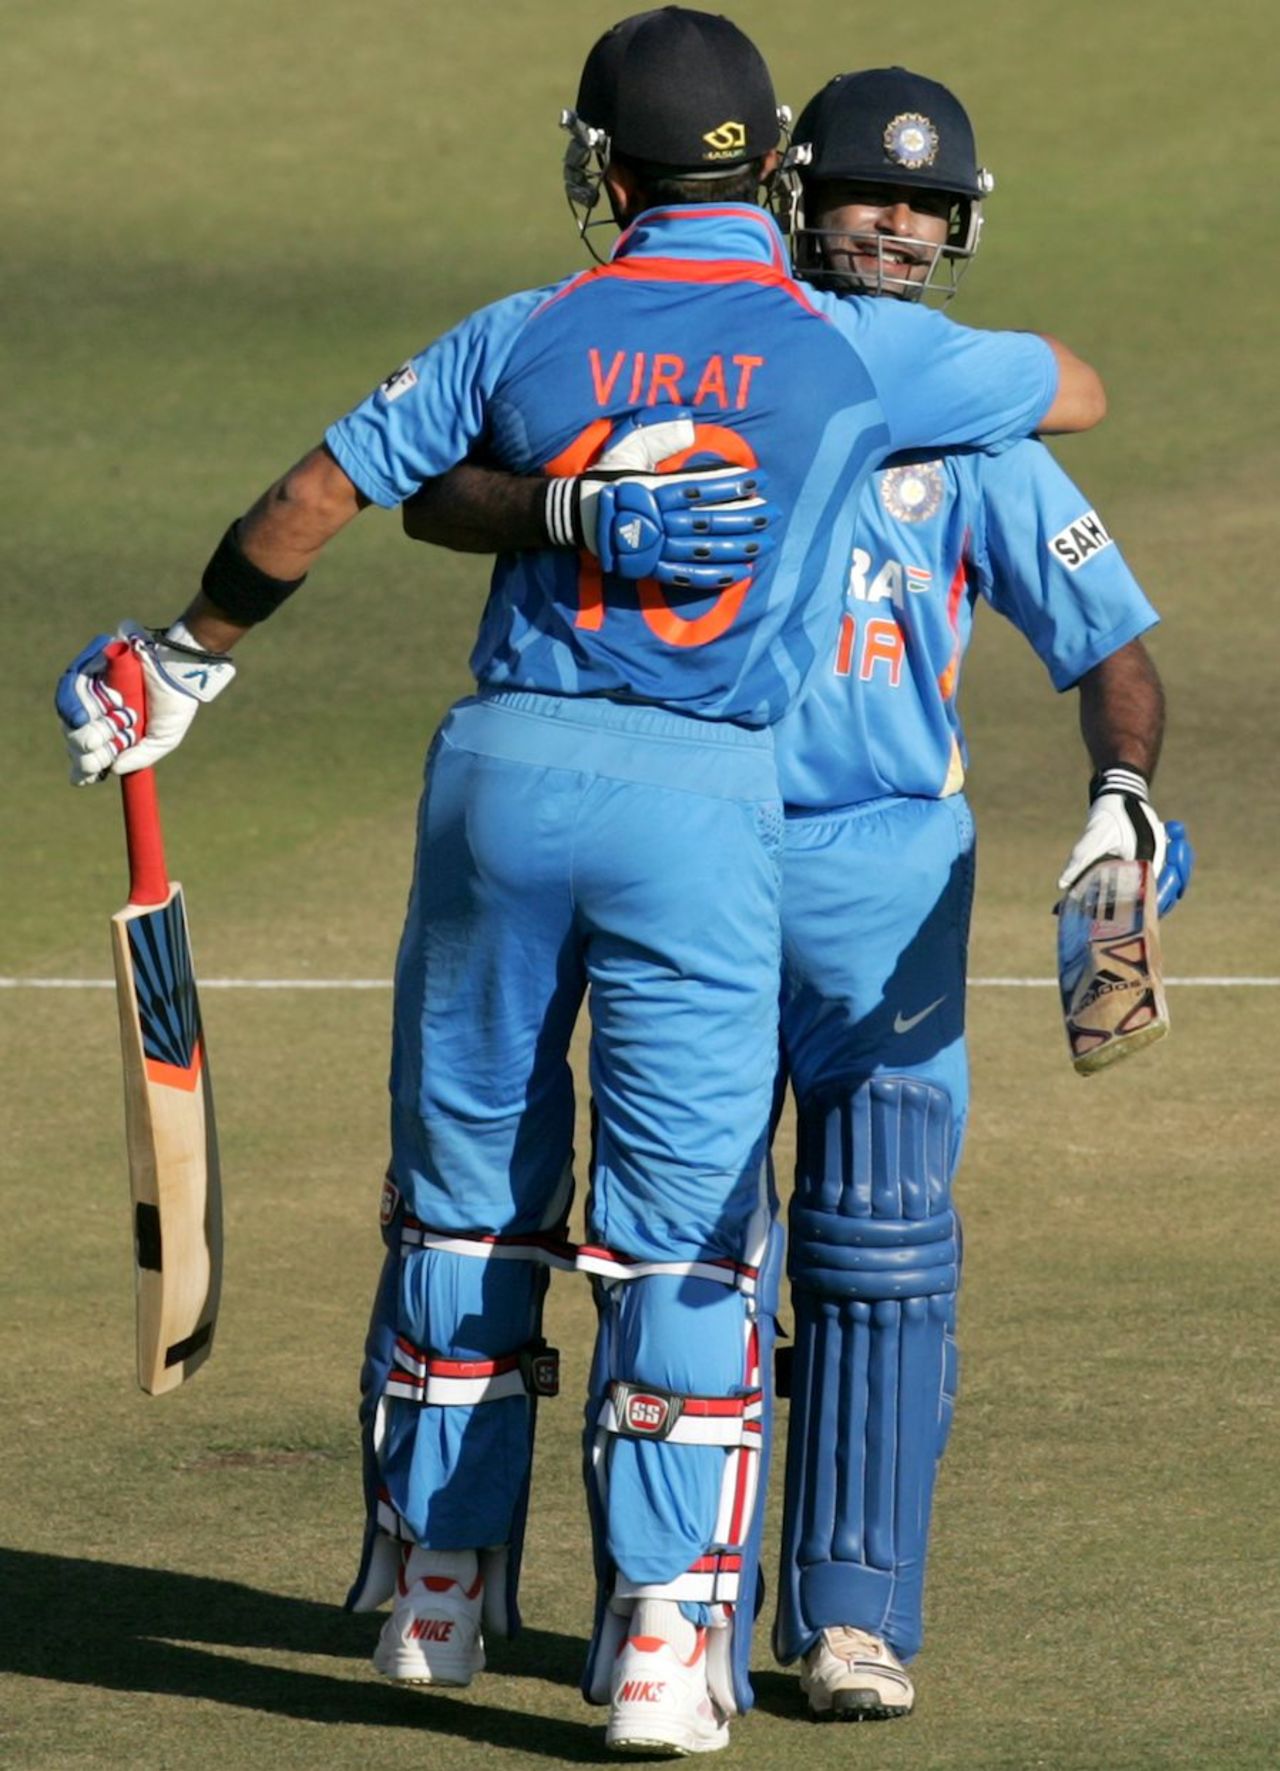 Virat Kohli and Ambati Rayudu added 159 for the third wicket, Zimbabwe v India, 1st ODI, Harare, July 24, 2013